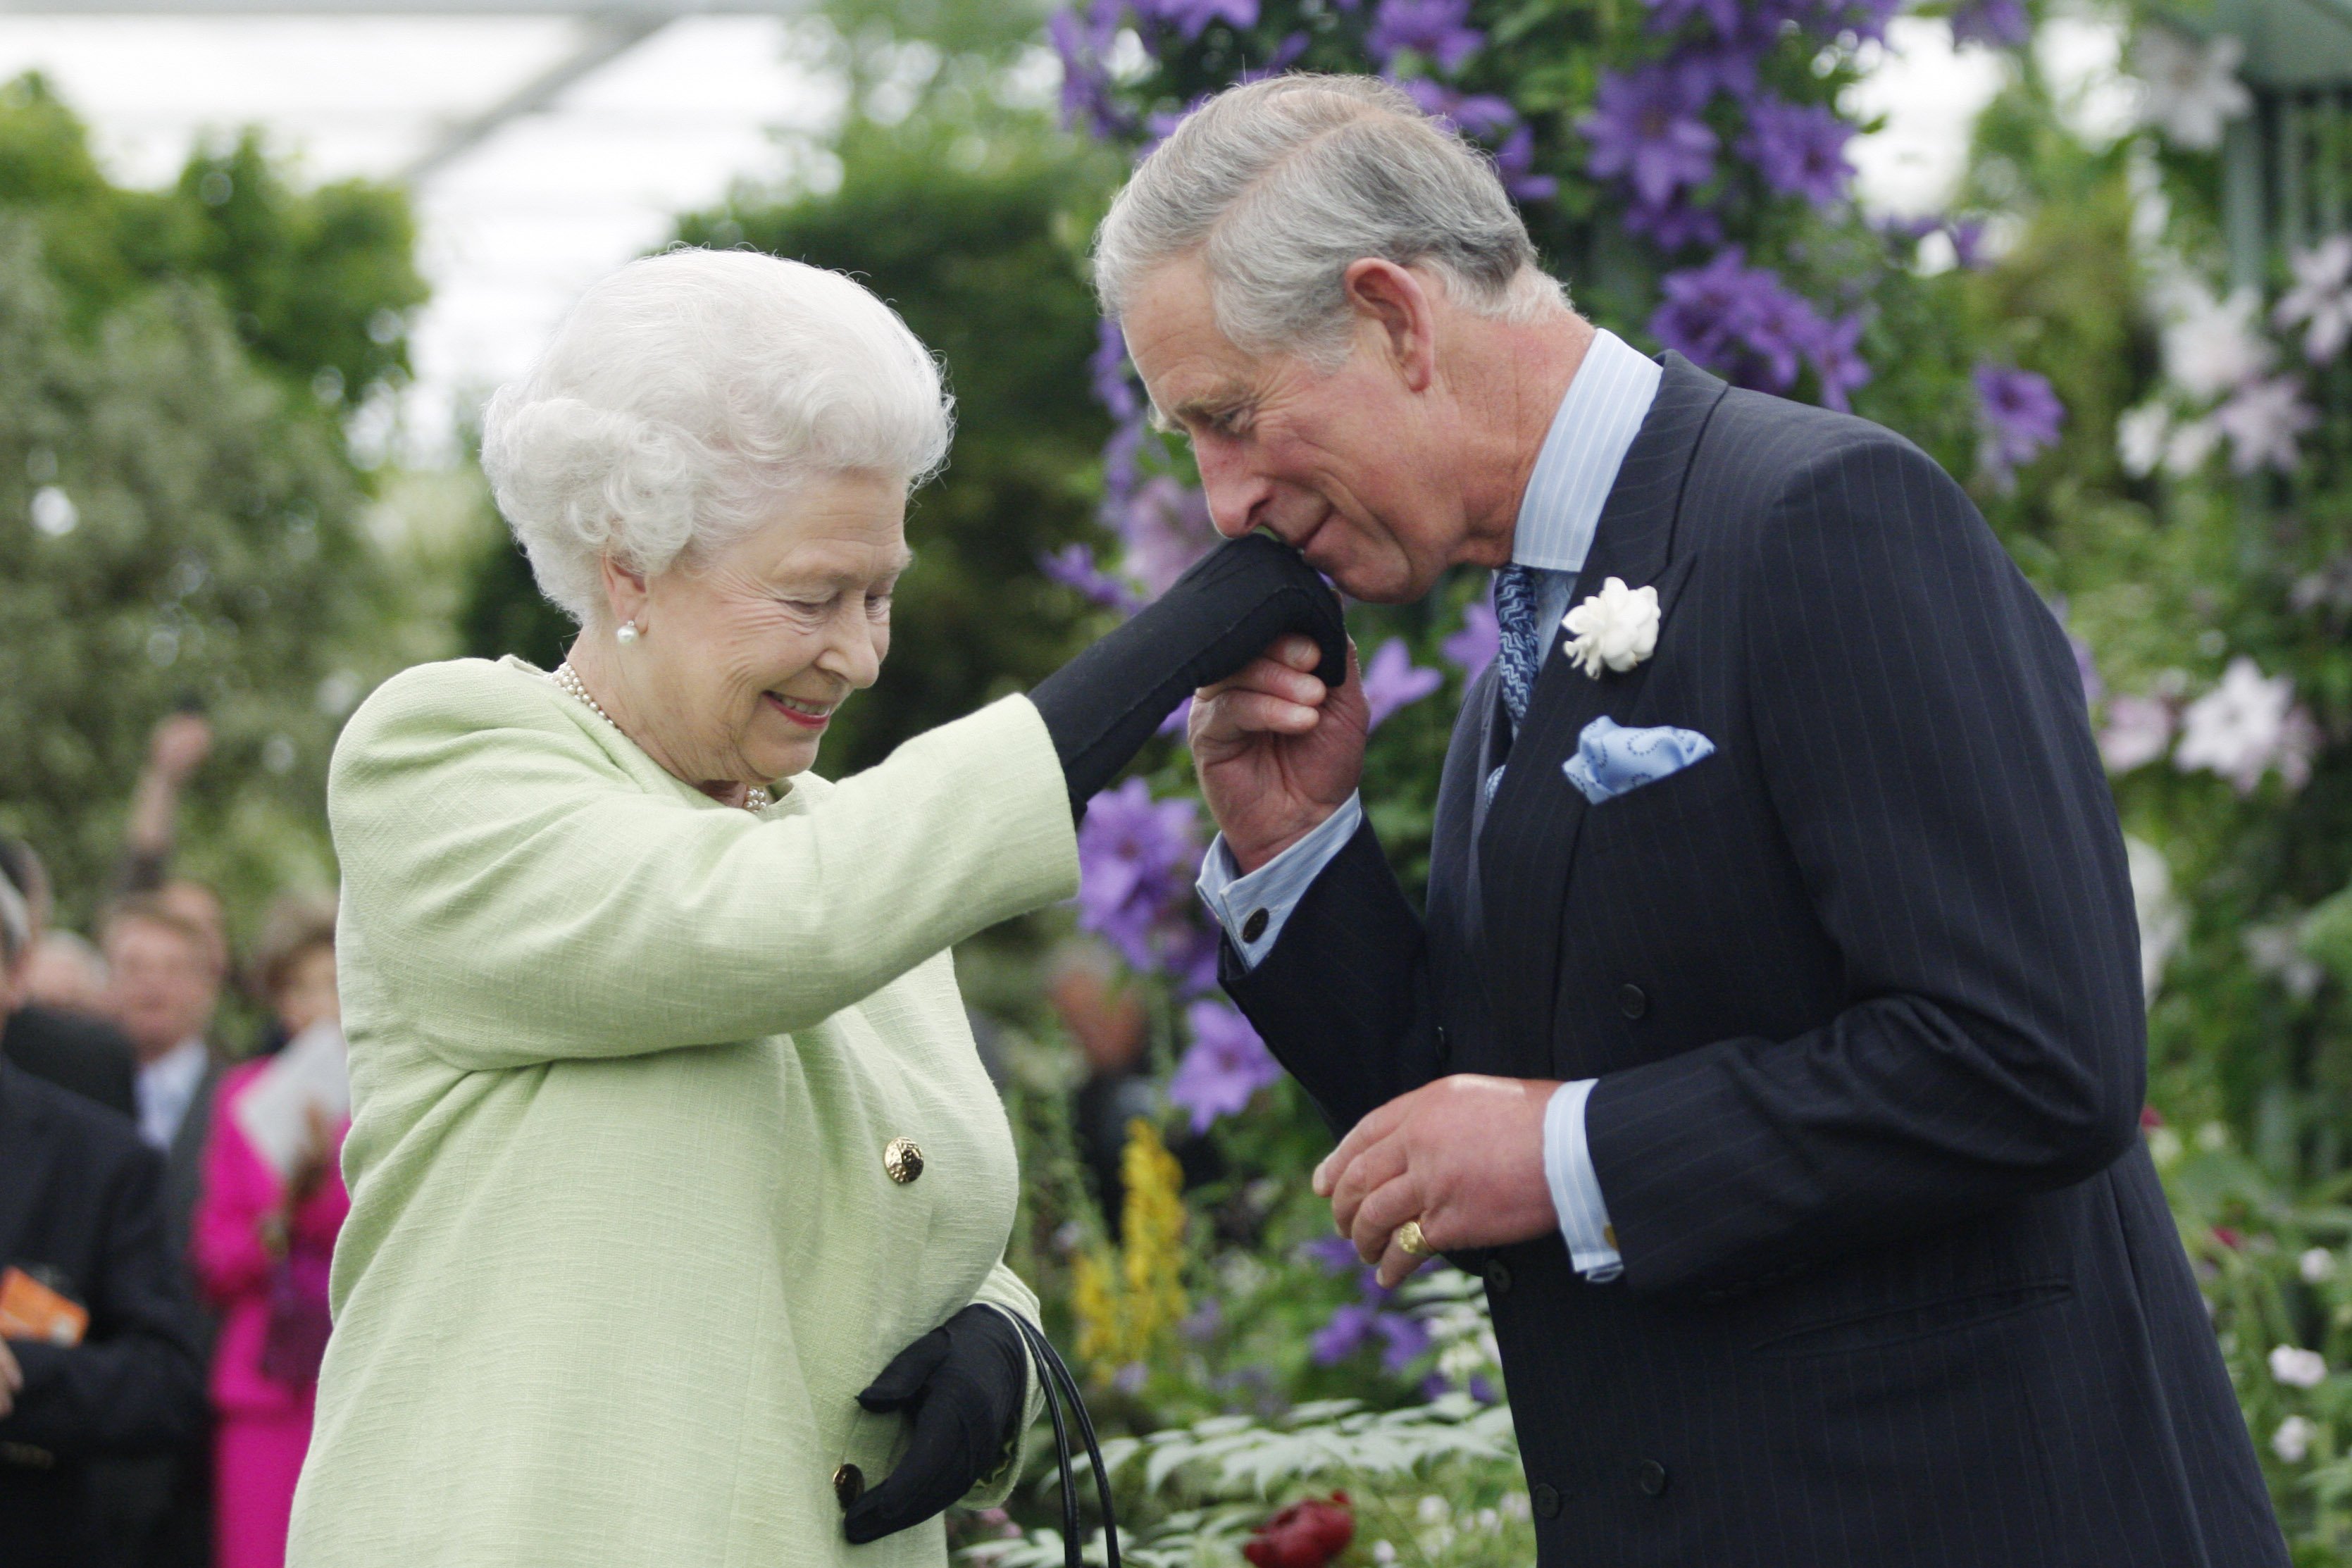 Königin Elizabeth II. überreicht Prinz Charles, Prince of Wales, die Victoria Medal of Honour der Royal Horticultural Society während eines Besuchs der Chelsea Flower Show am 18. Mai 2009 in London. | Quelle: Getty Images